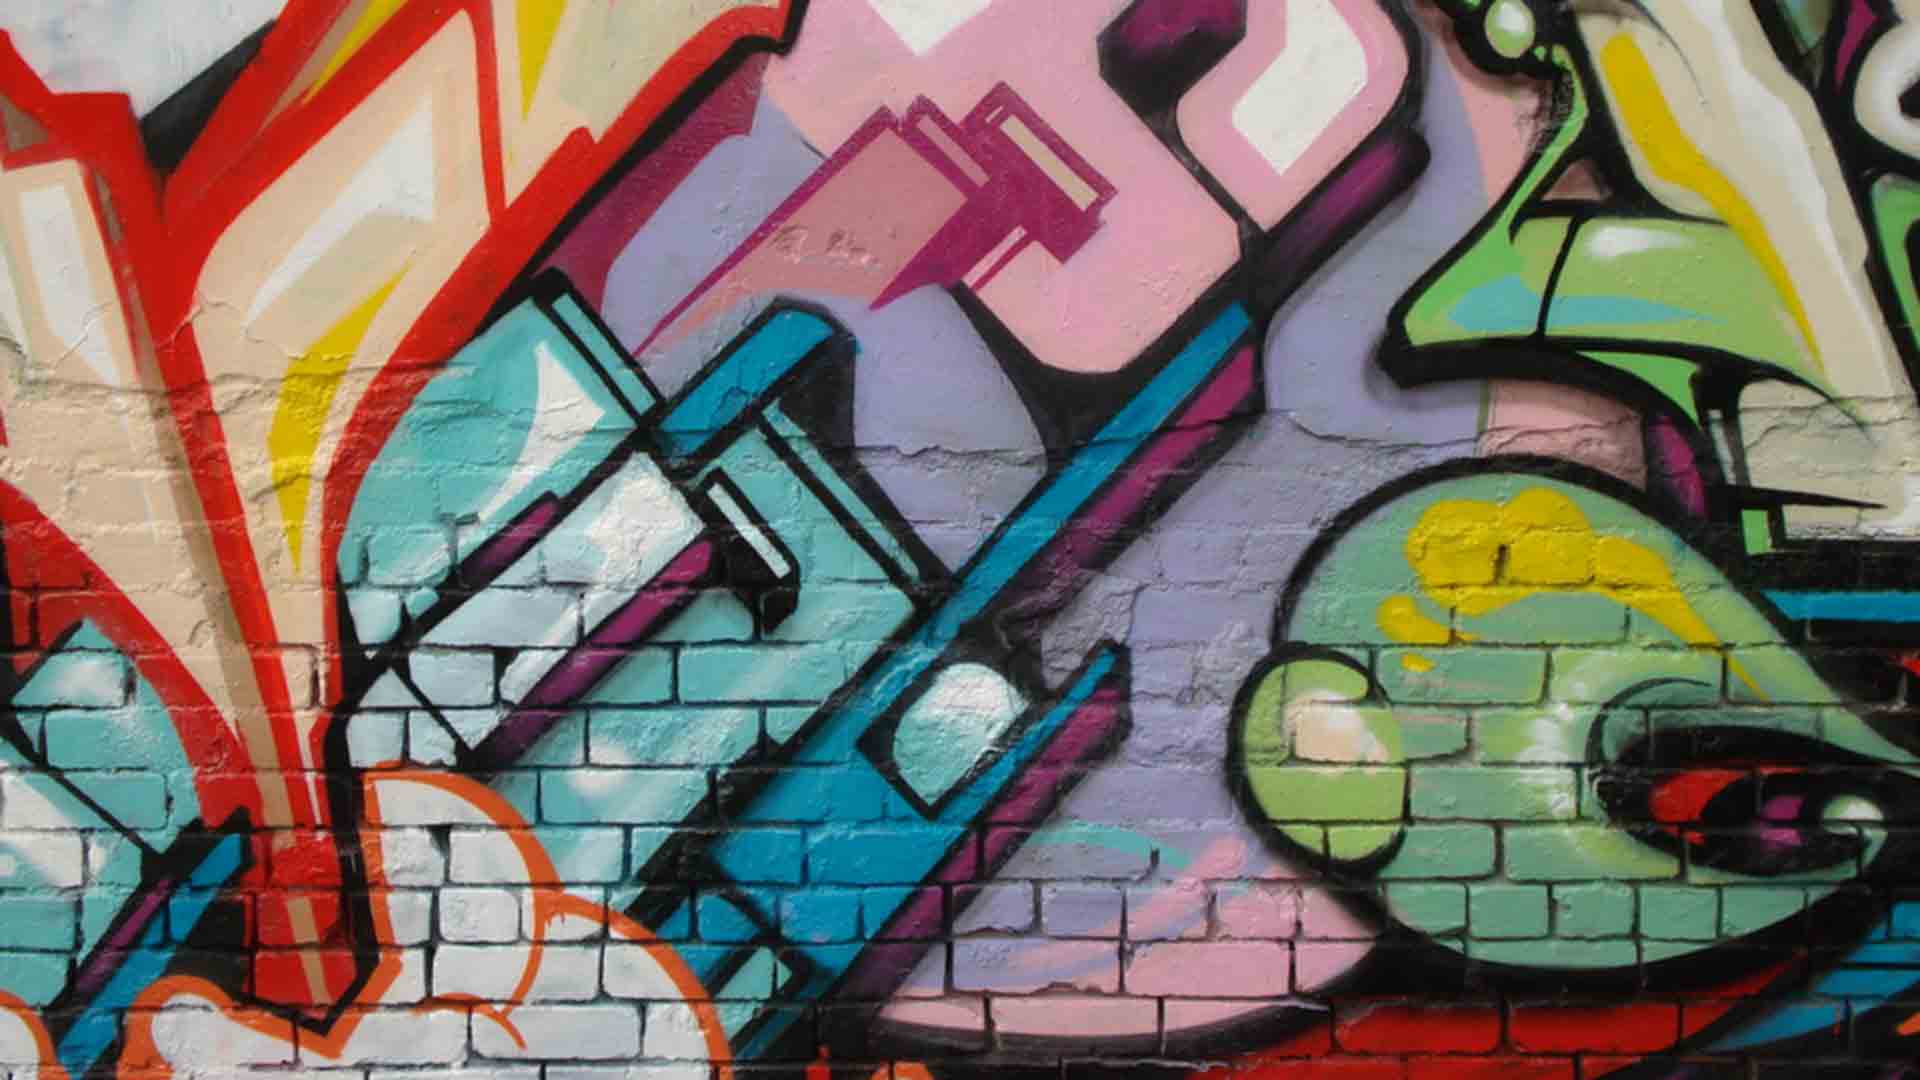 Download Wall Graffiti Wallpaper 1920x1080 | Full HD Wallpapers